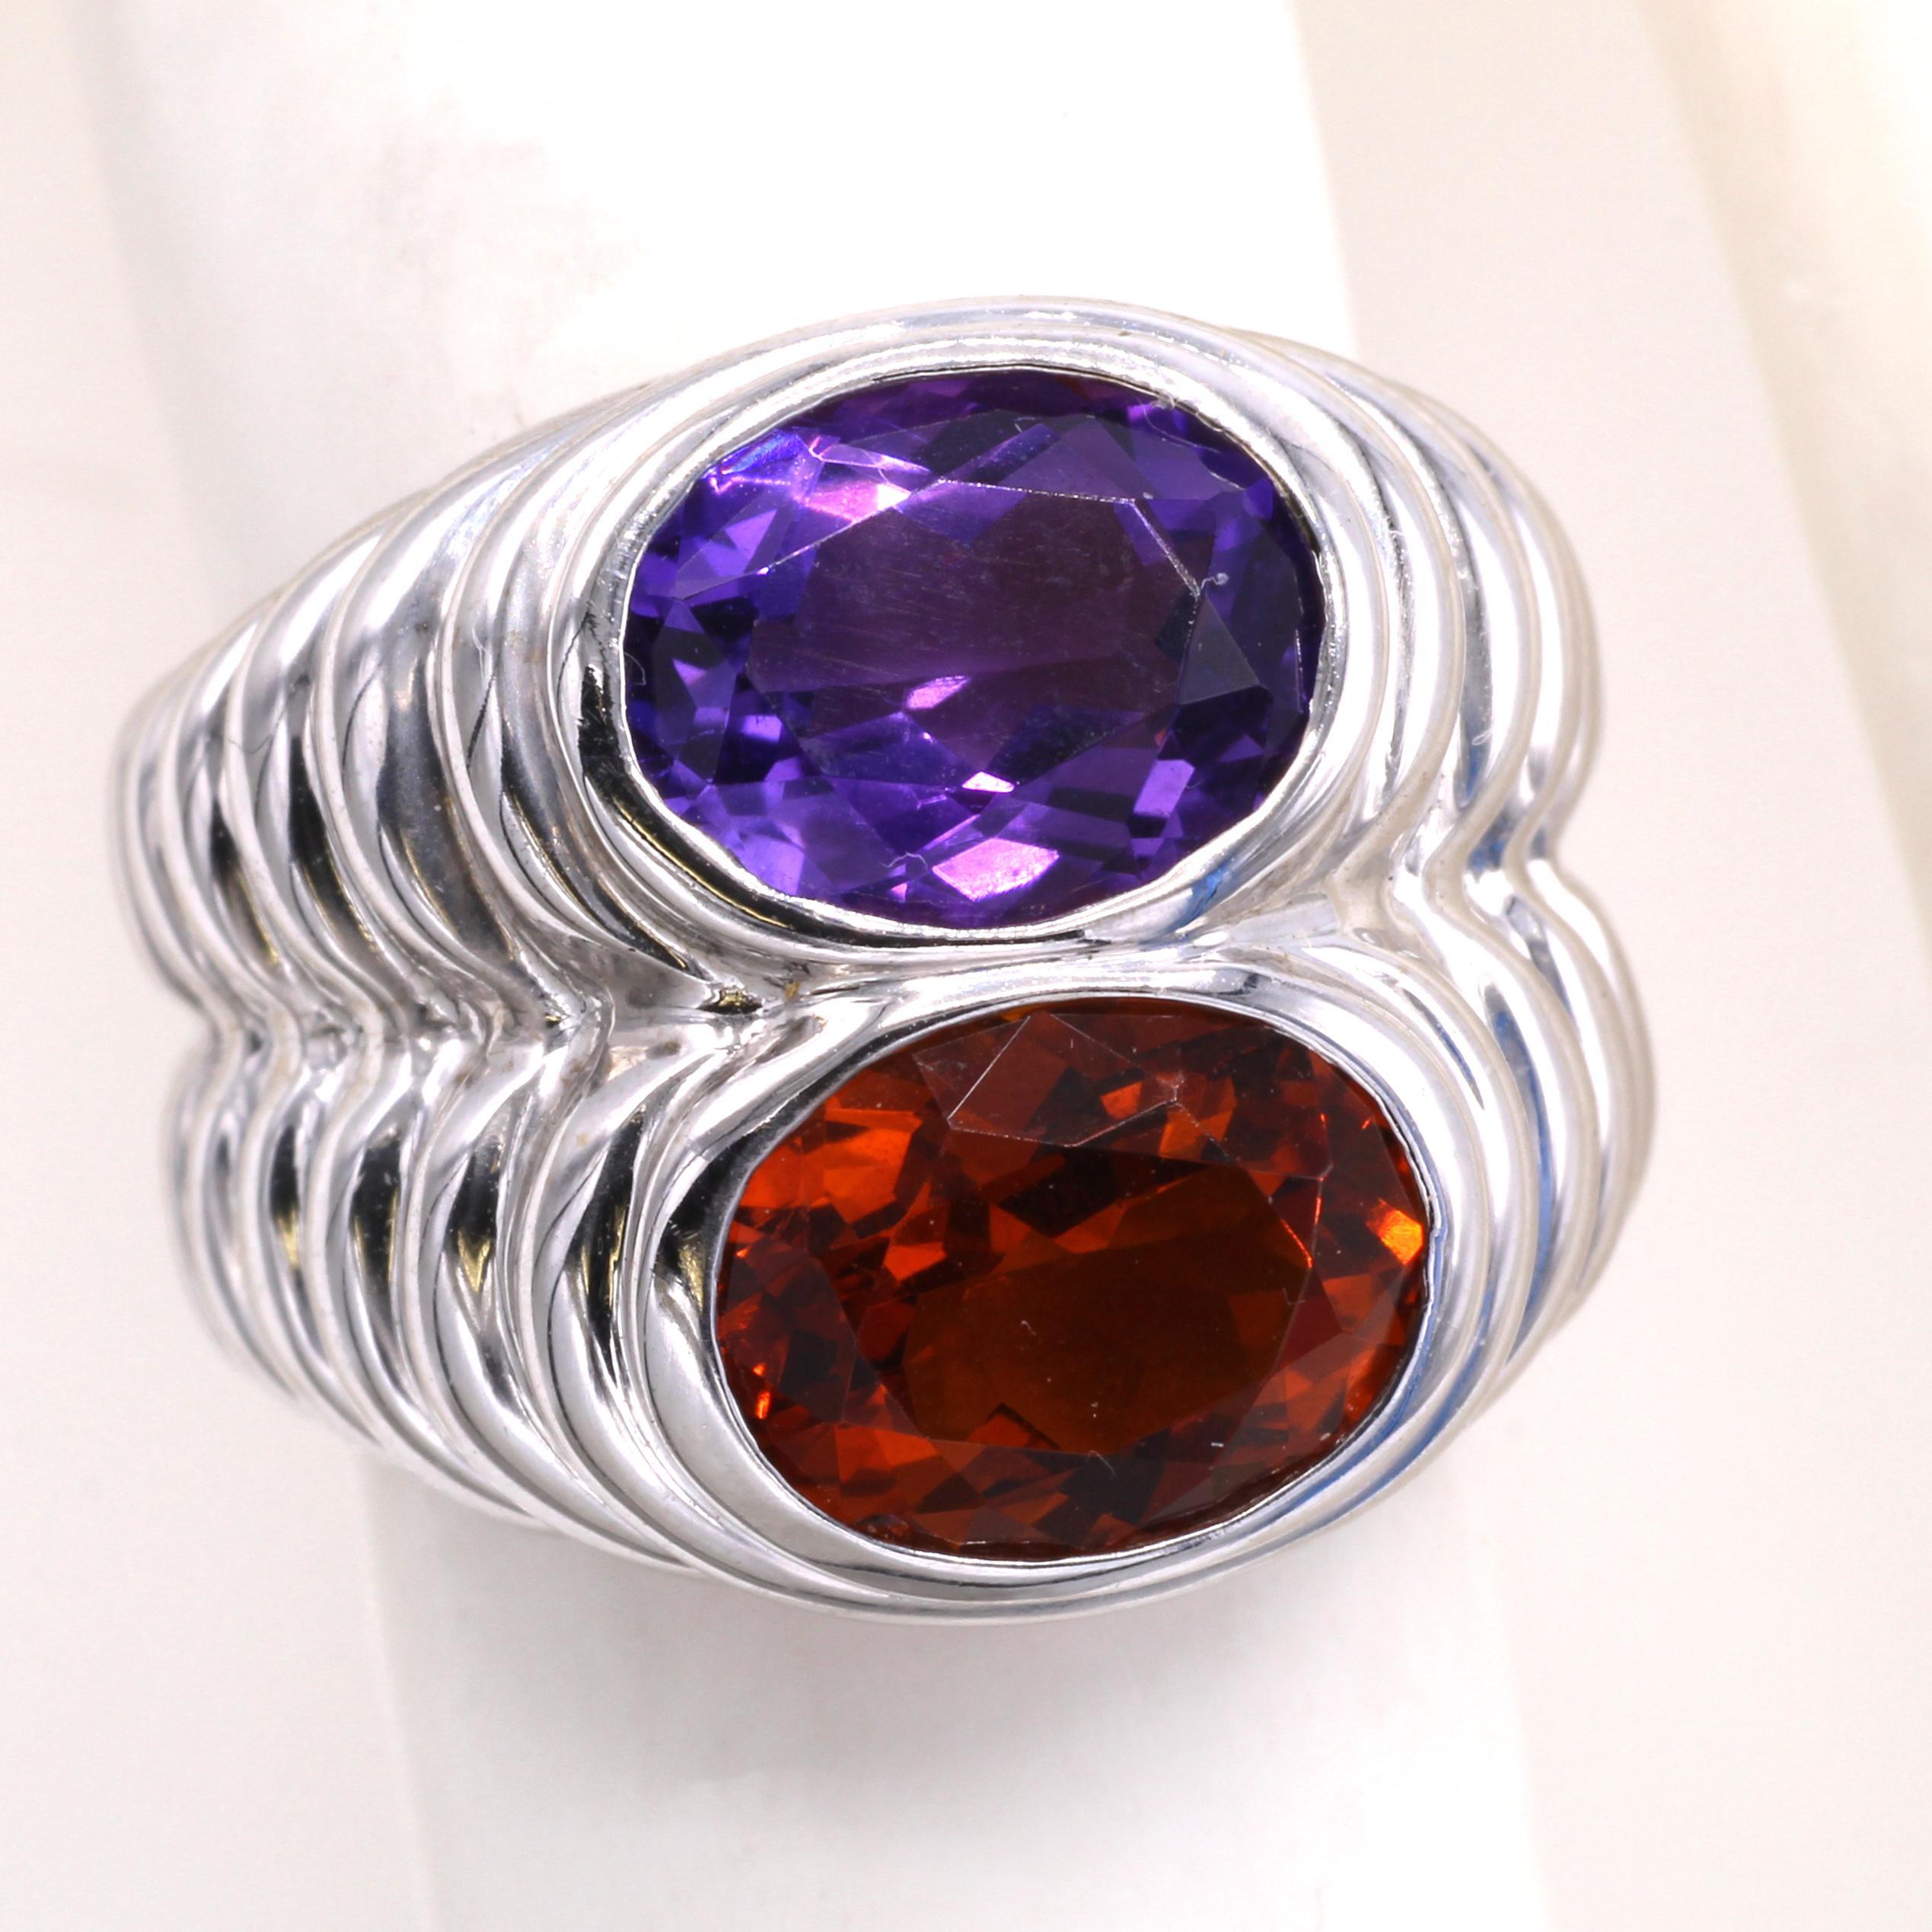 Dieser vom berühmten italienischen Juwelier Bulgari entworfene und meisterhaft handgefertigte Ring enthält einen leuchtend orangefarbenen Citrin und einen stark gesättigten, samtigen violetten Amethyst, die perfekt in passende Ovale geschnitten